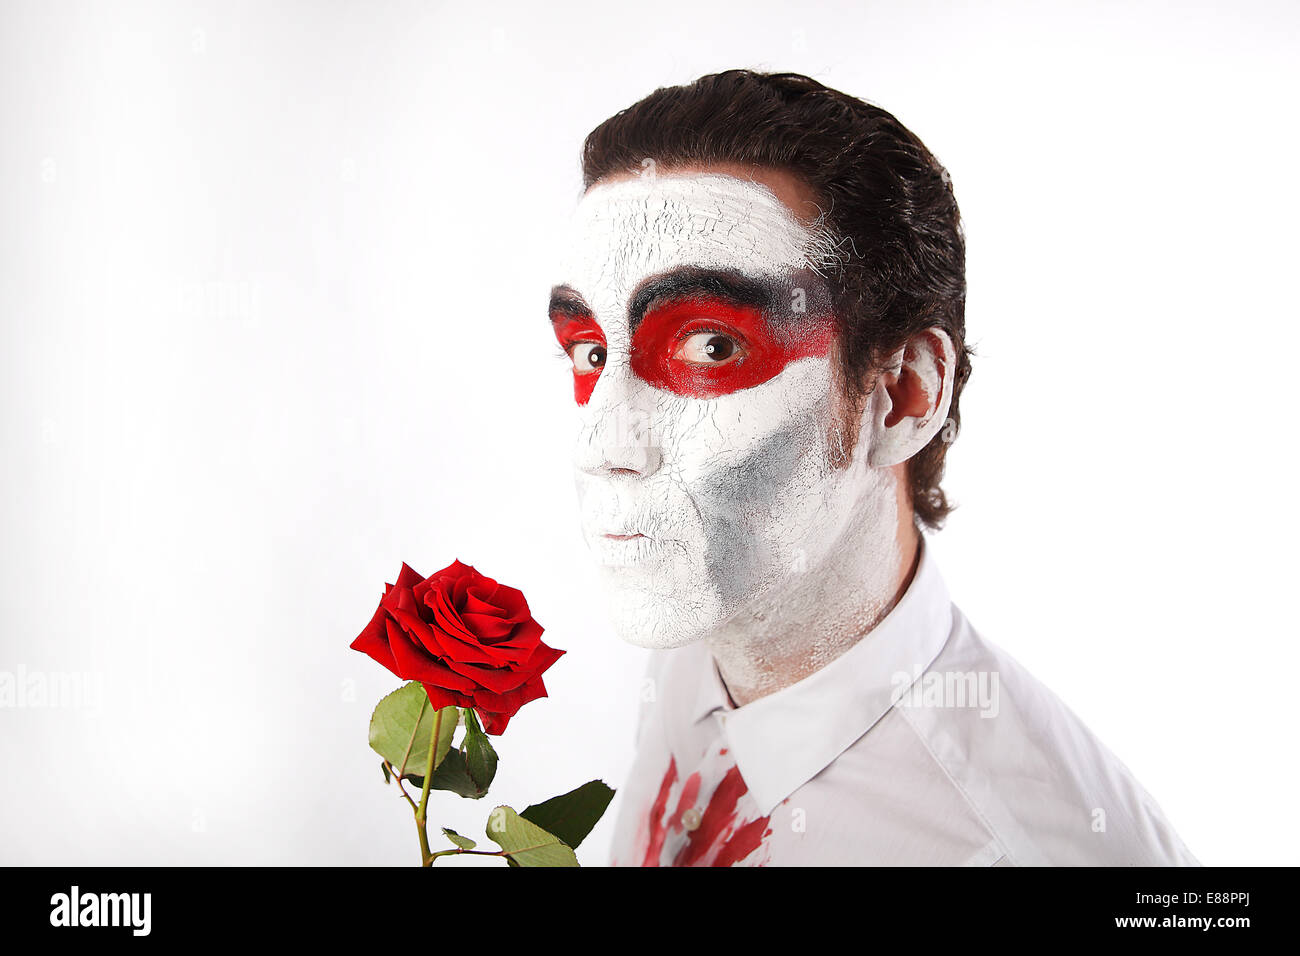 L'homme blanc avec mascara et bloody shirt détient rose rouge devant un fond blanc Banque D'Images